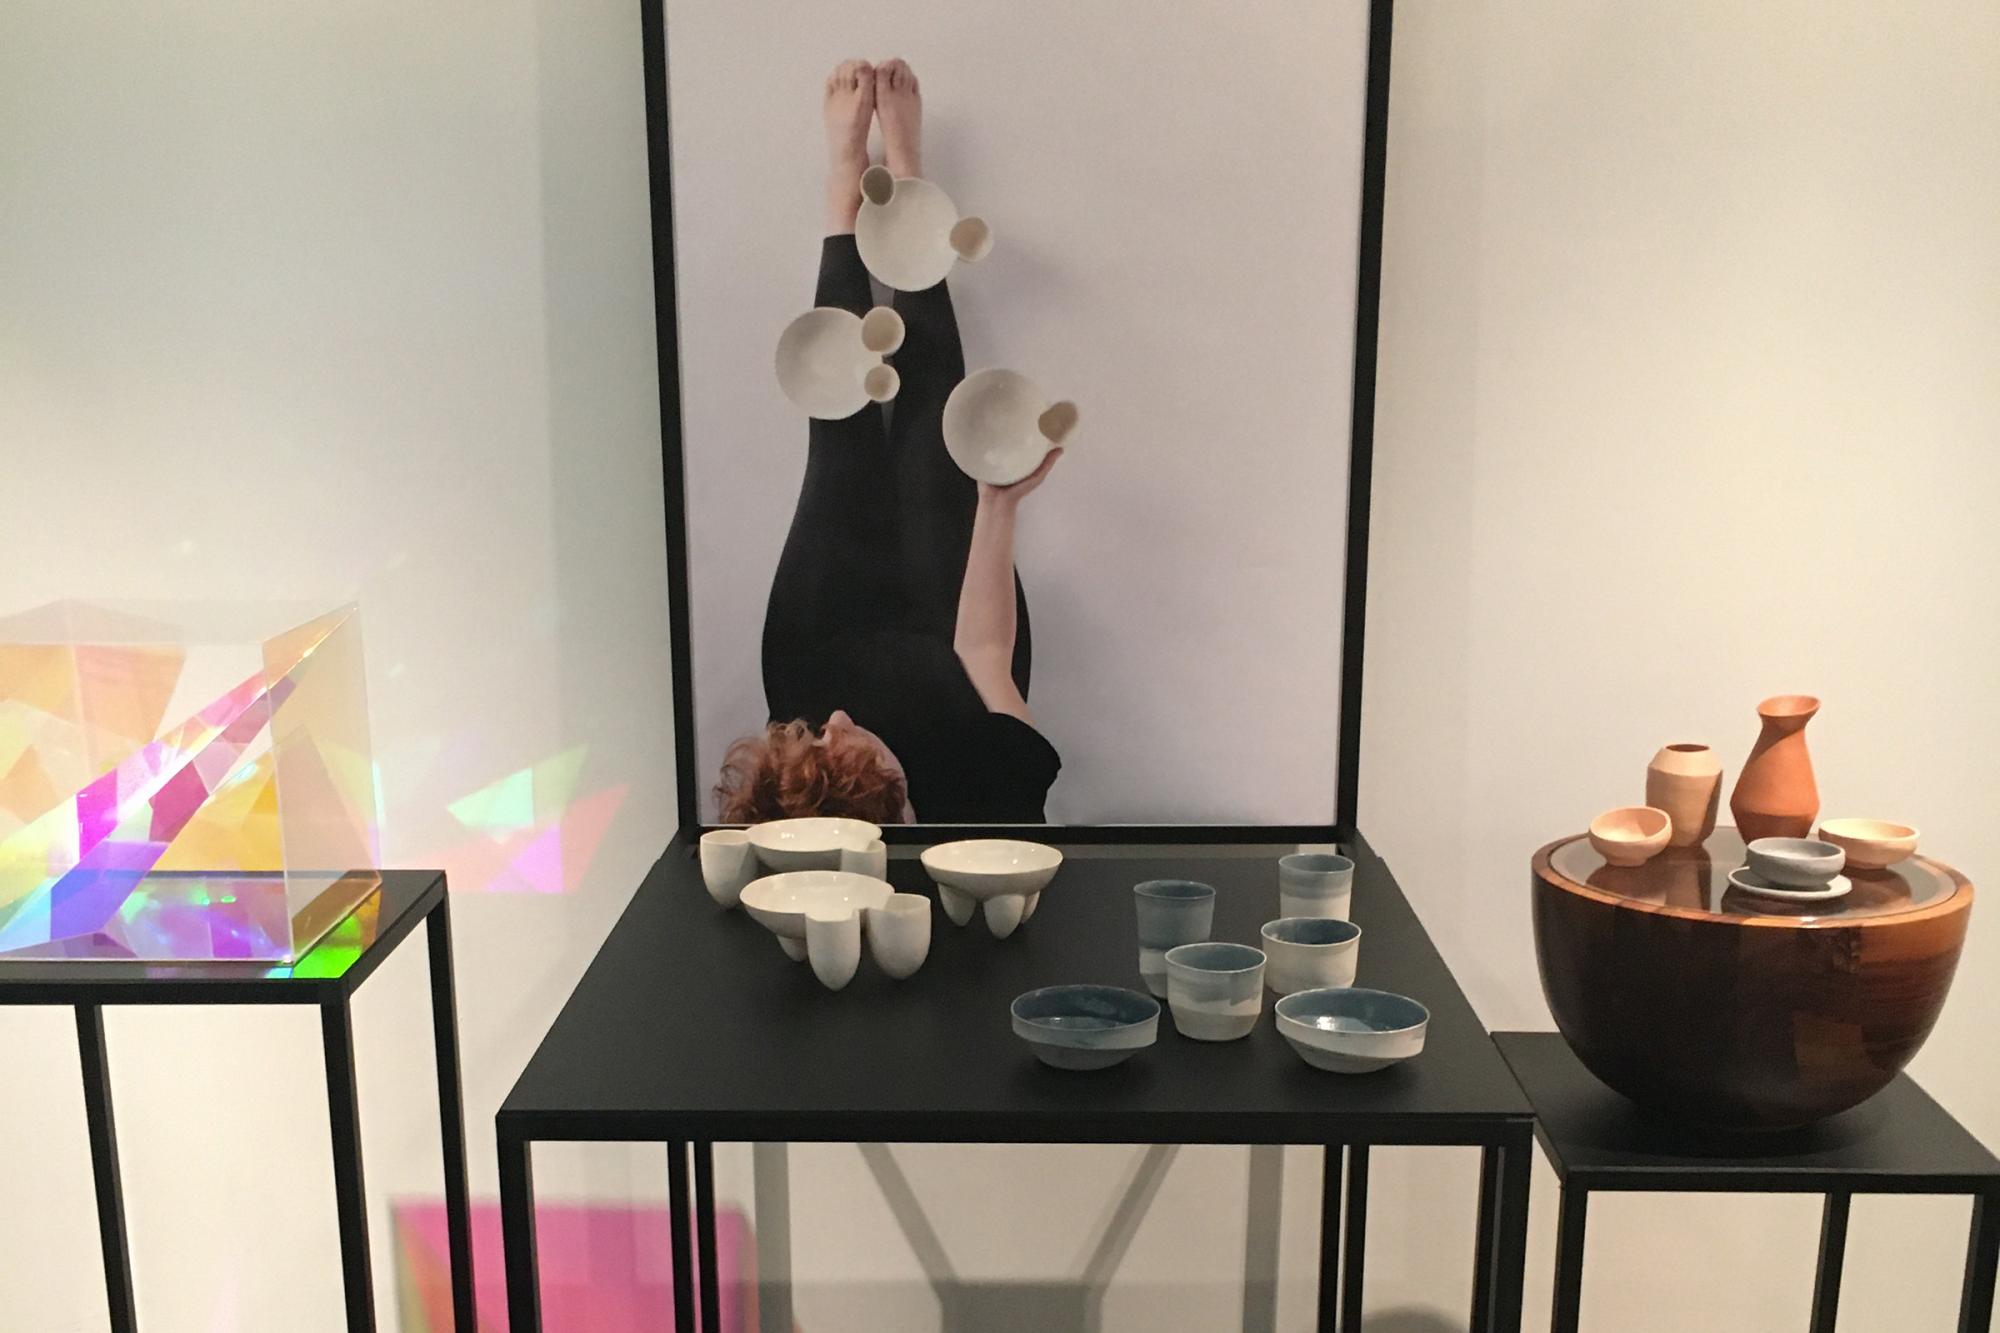 Tisch mit Keramikgef??en und Poster von Maike Panz